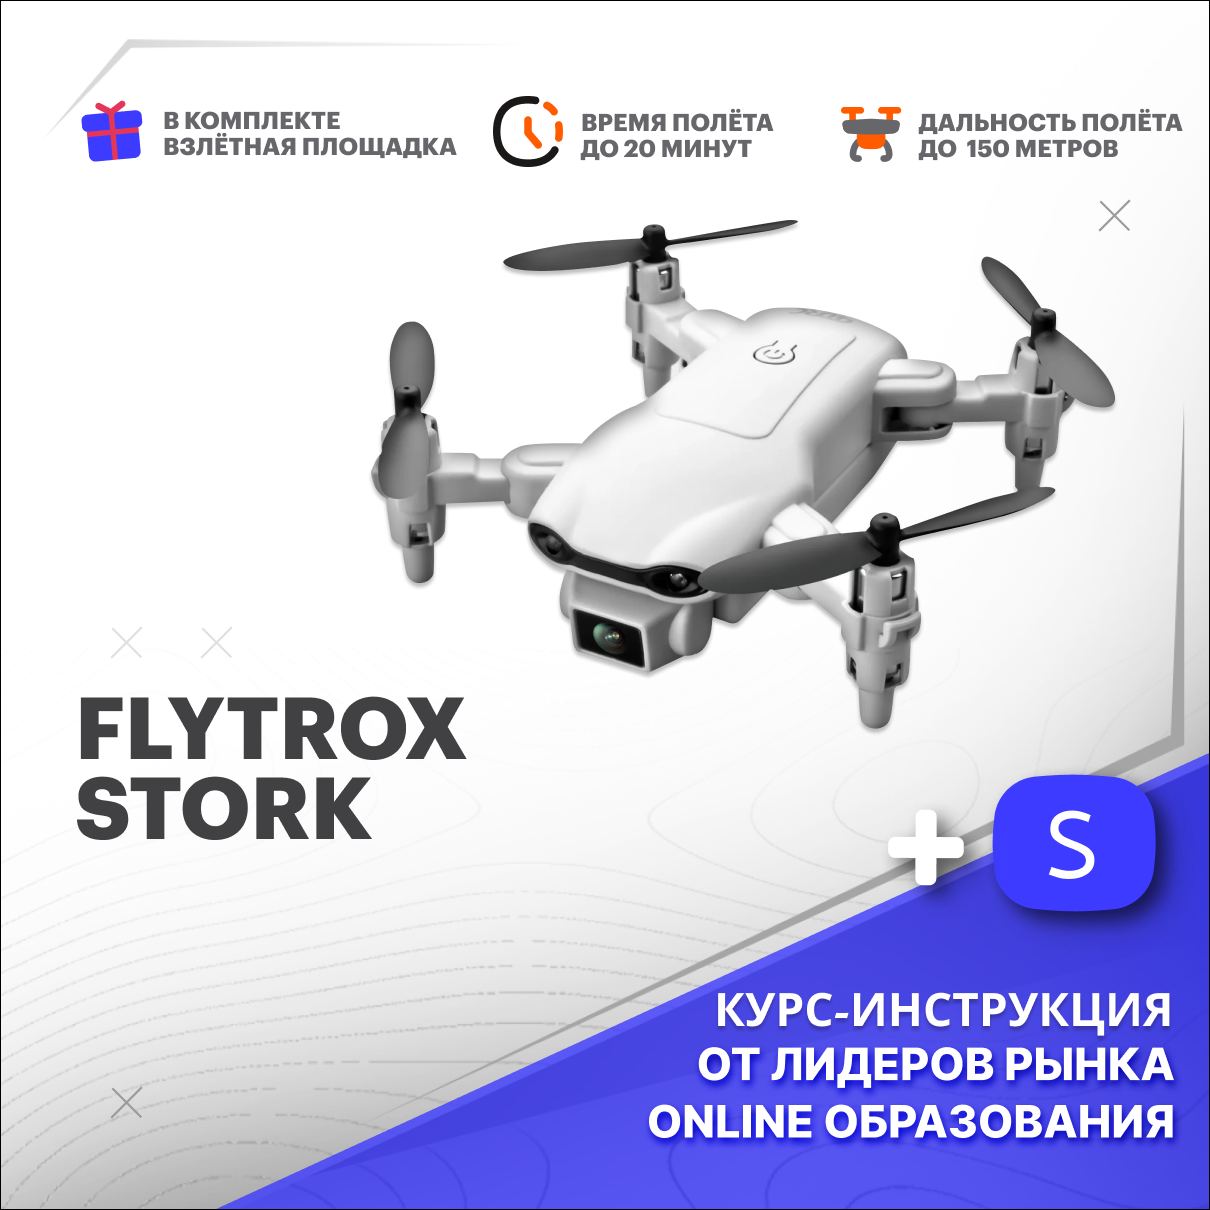 Квадрокоптер Flytrox Stork белый с камерой